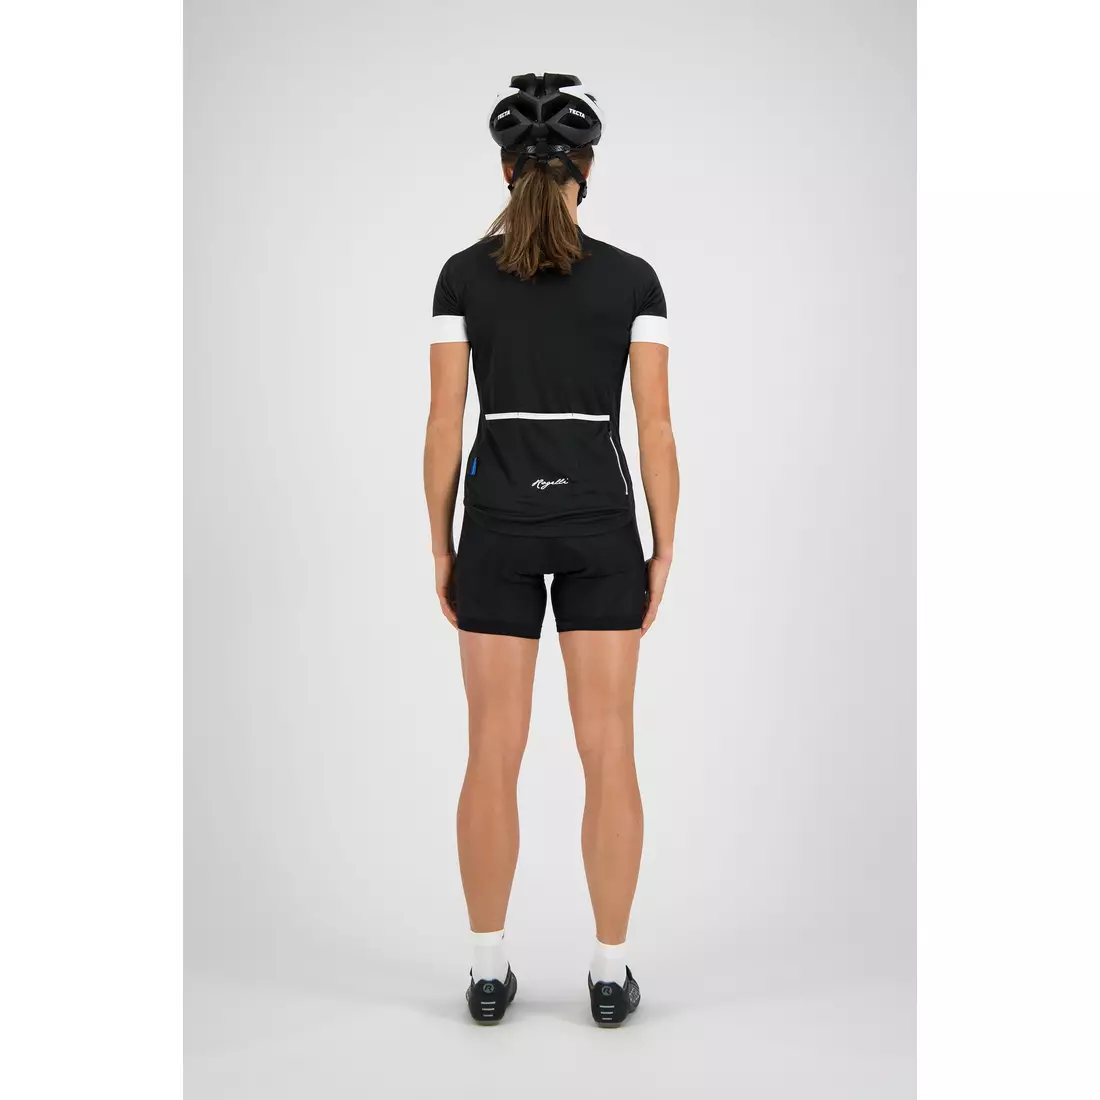 ROGELLI MODESTA women's cycling jersey, Black-White